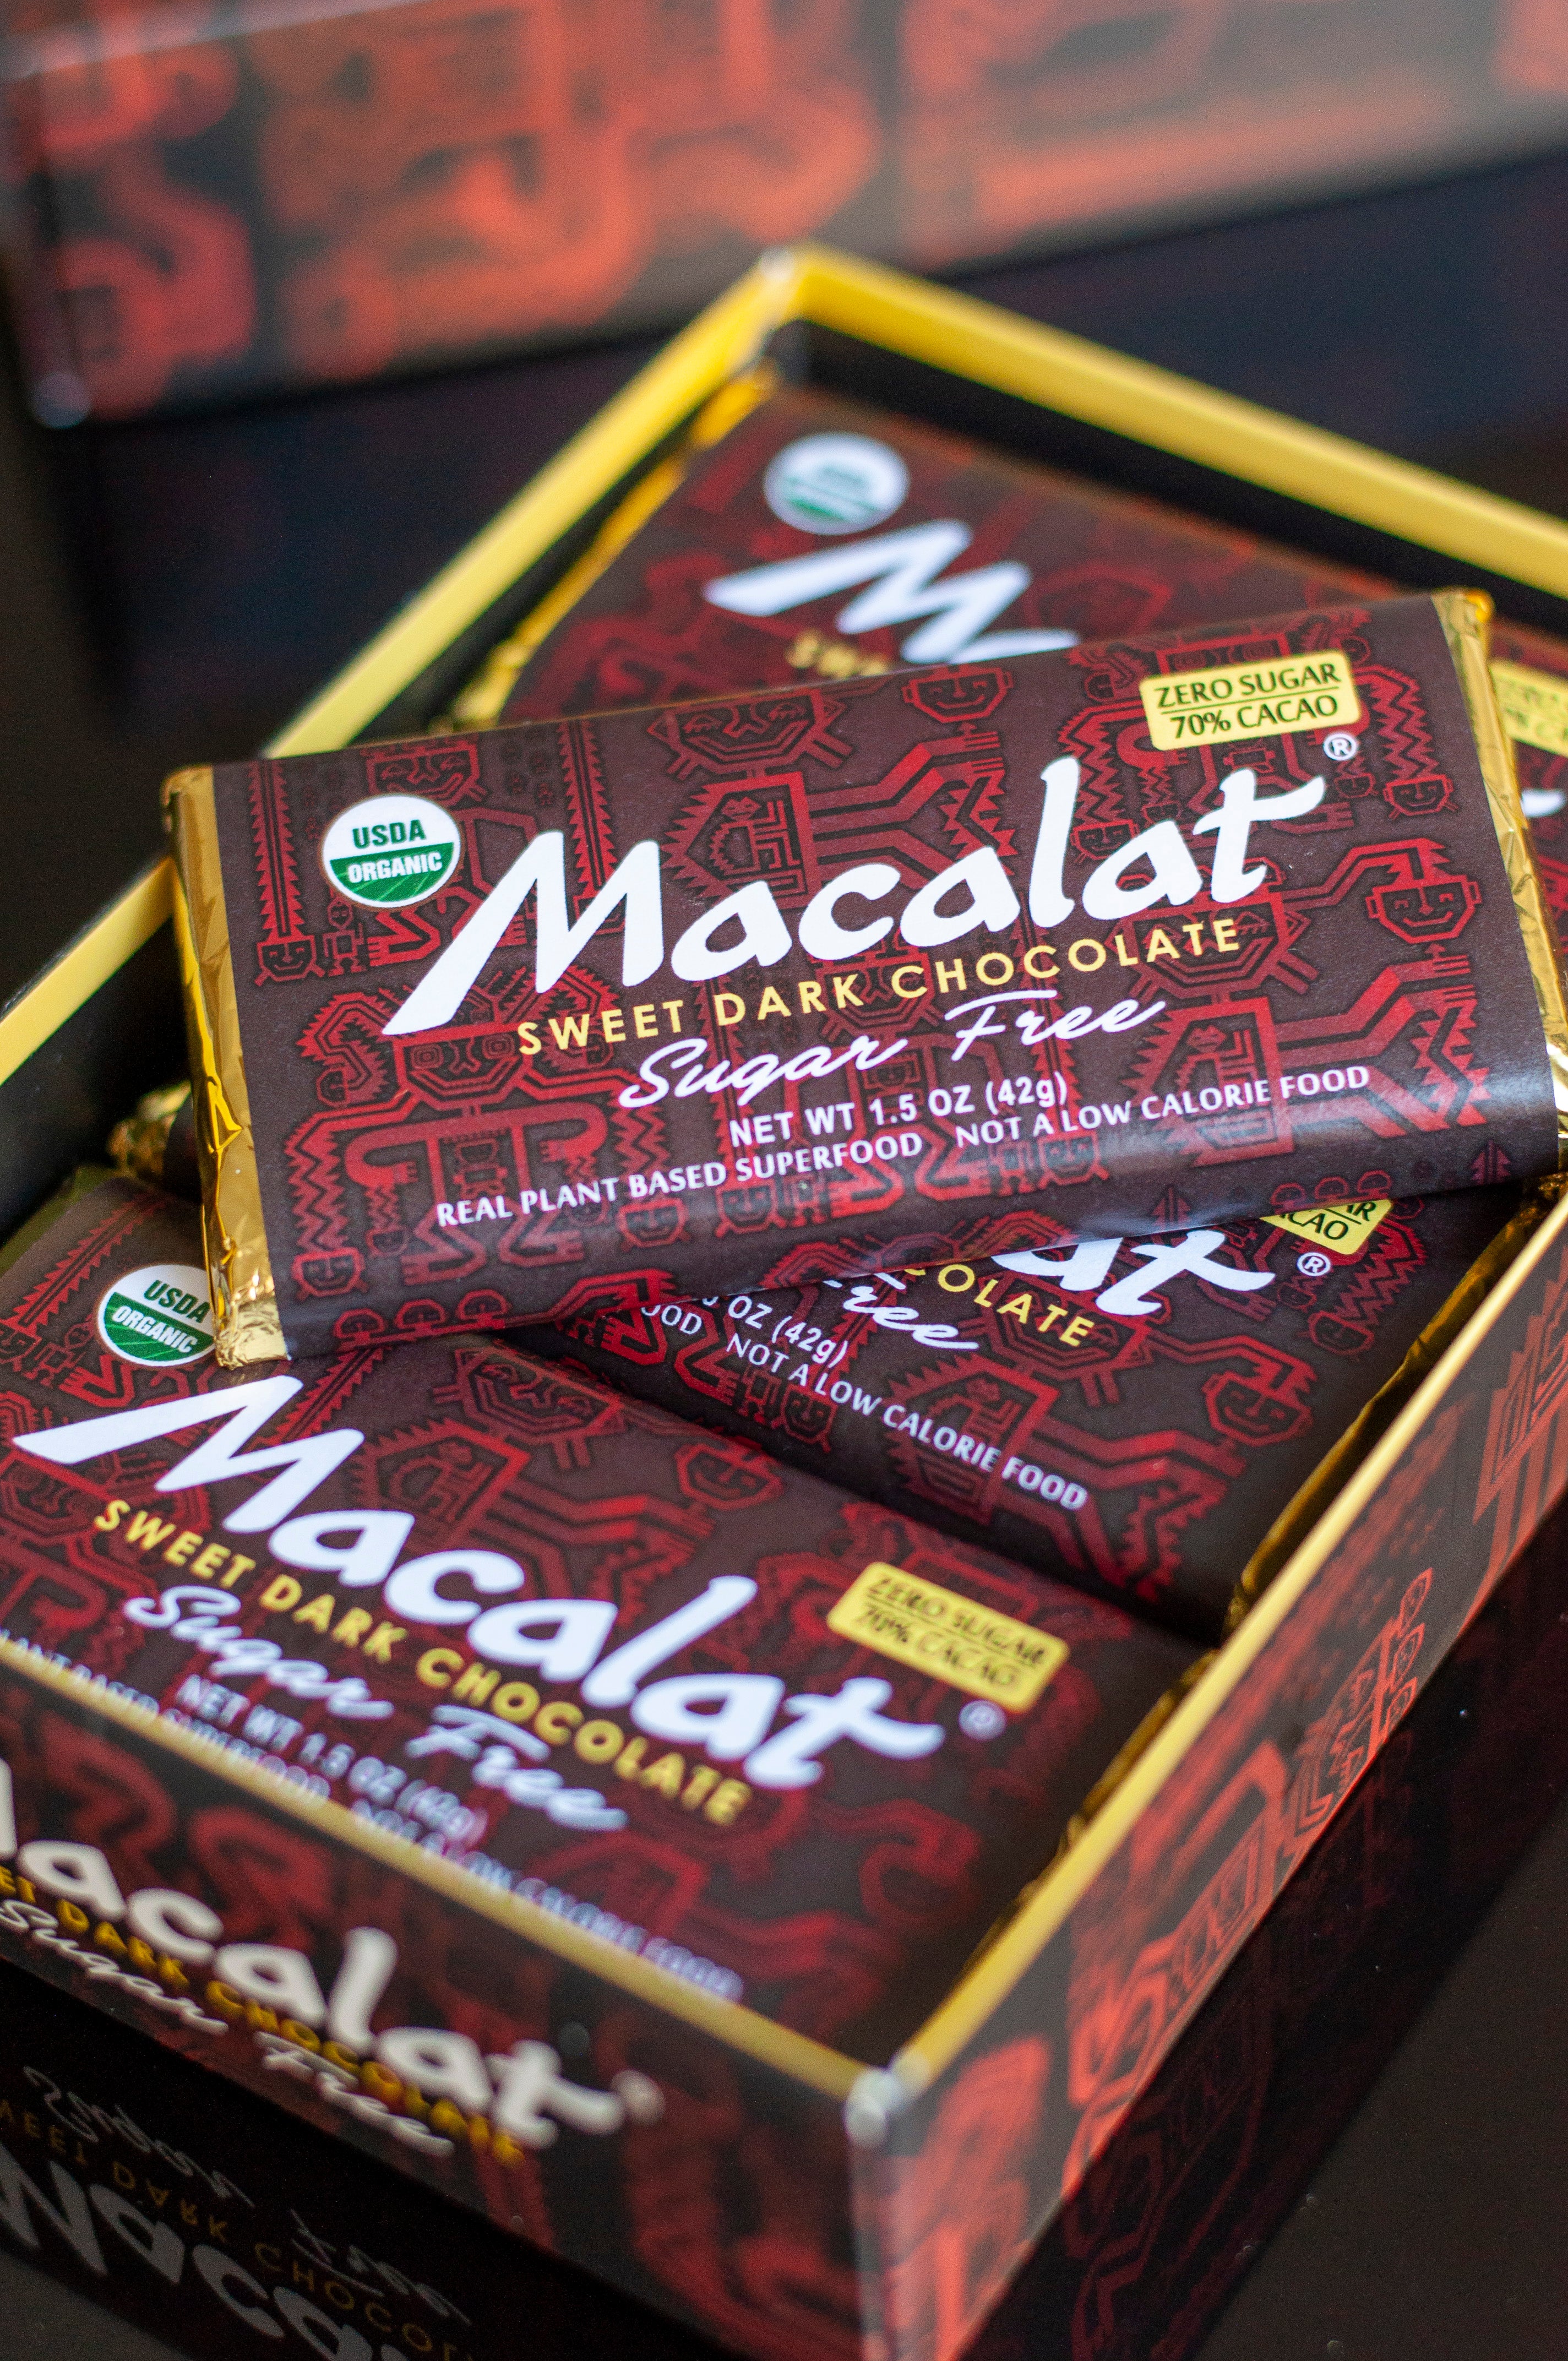 Macalat Organic Sweet Dark Chocolate